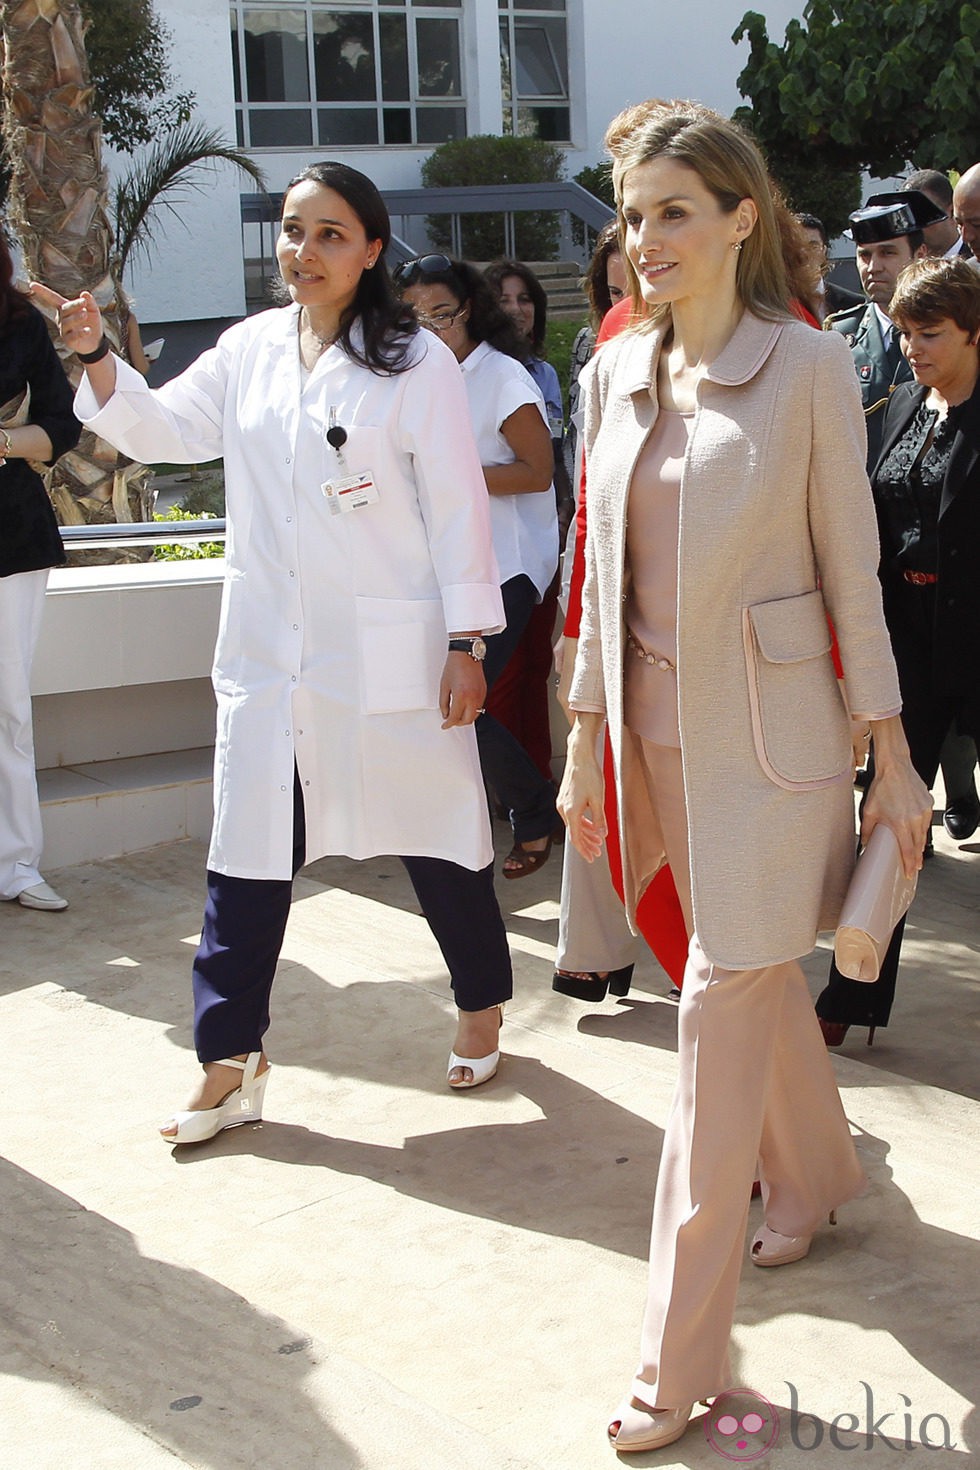 La Reina Letizia visitando el Rabat un centro de investigación contra el cáncer